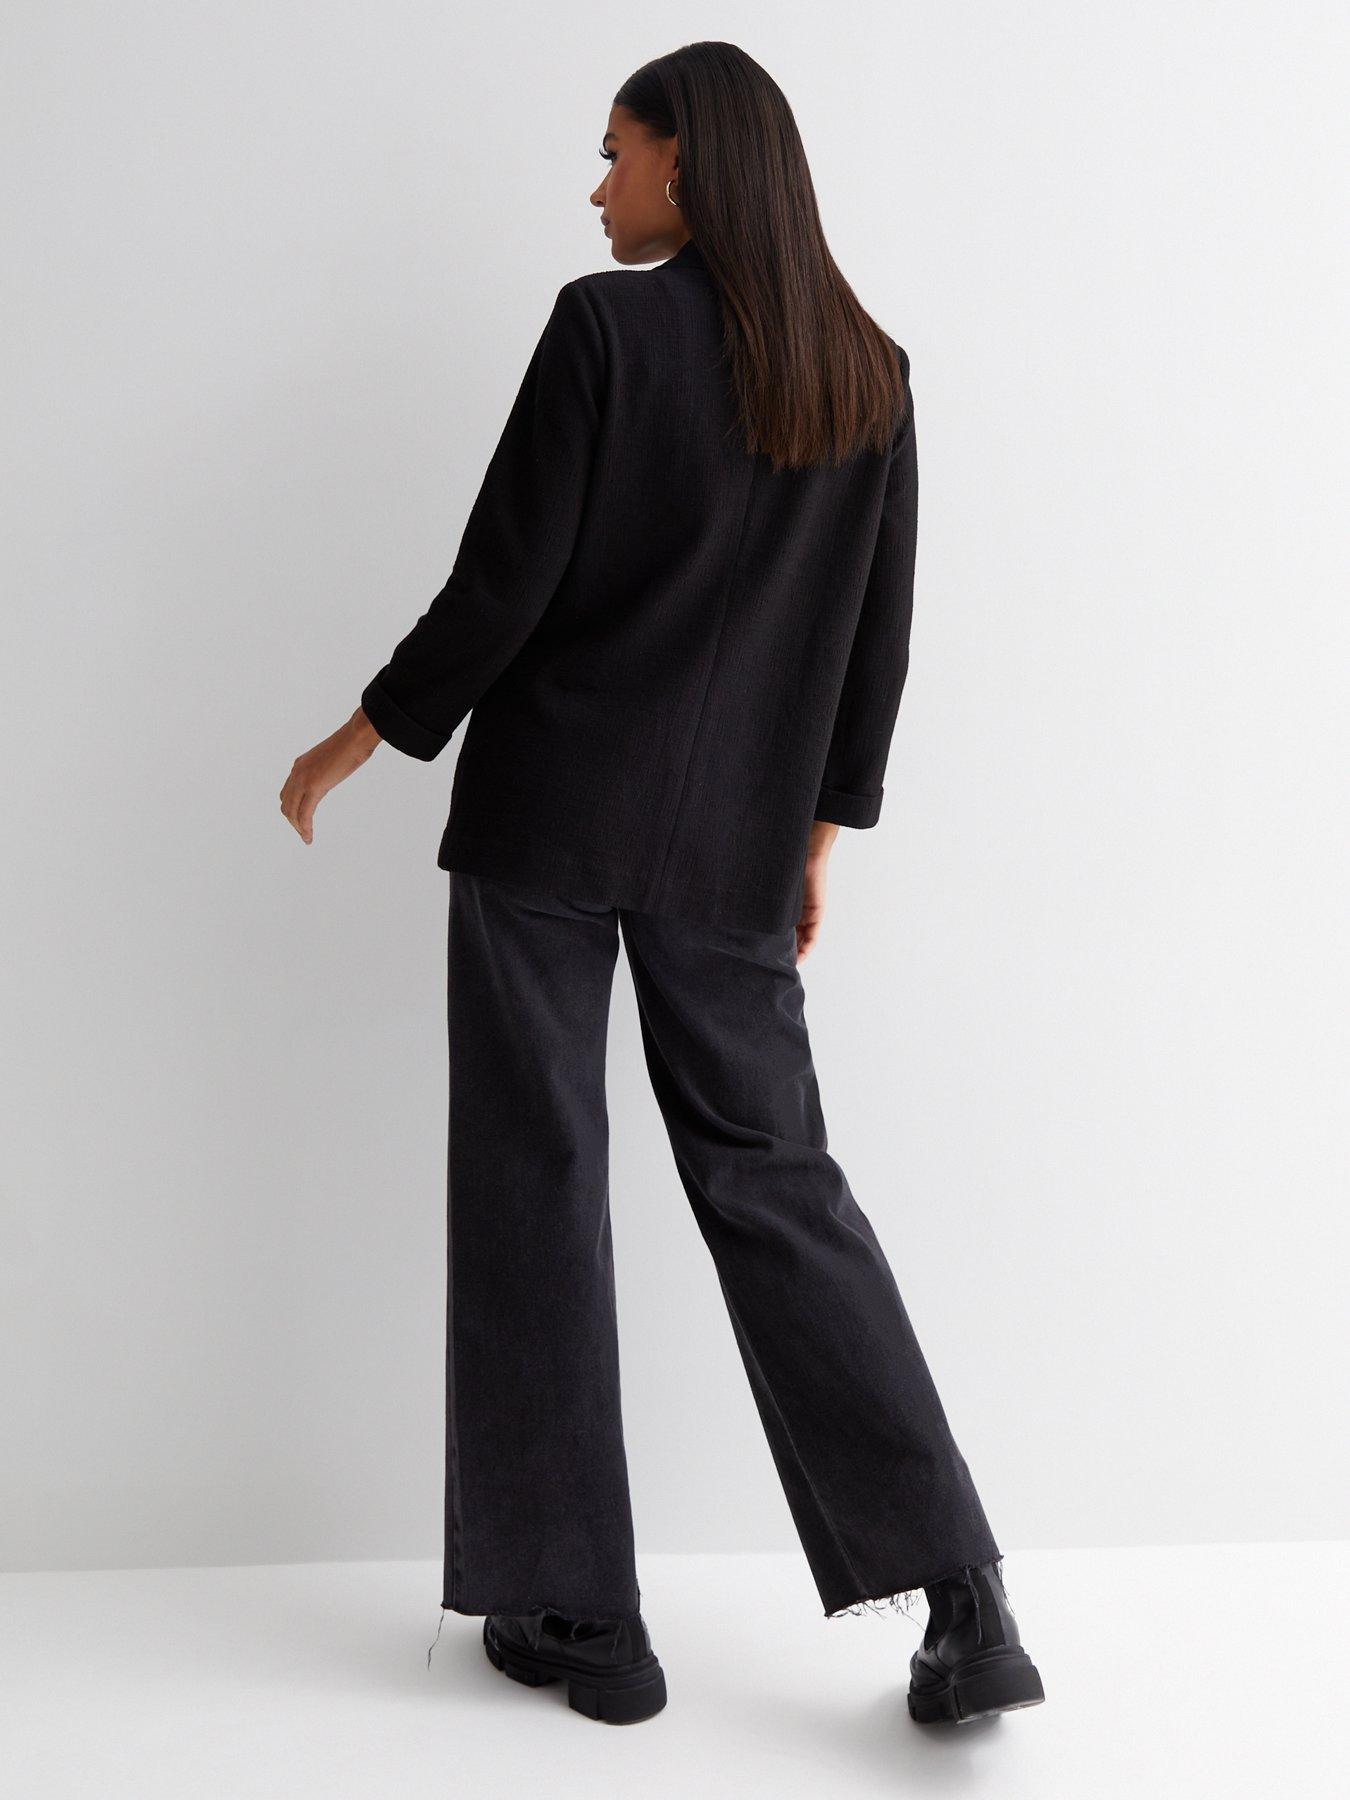 New Look Black Textured Jersey Blazer | very.co.uk